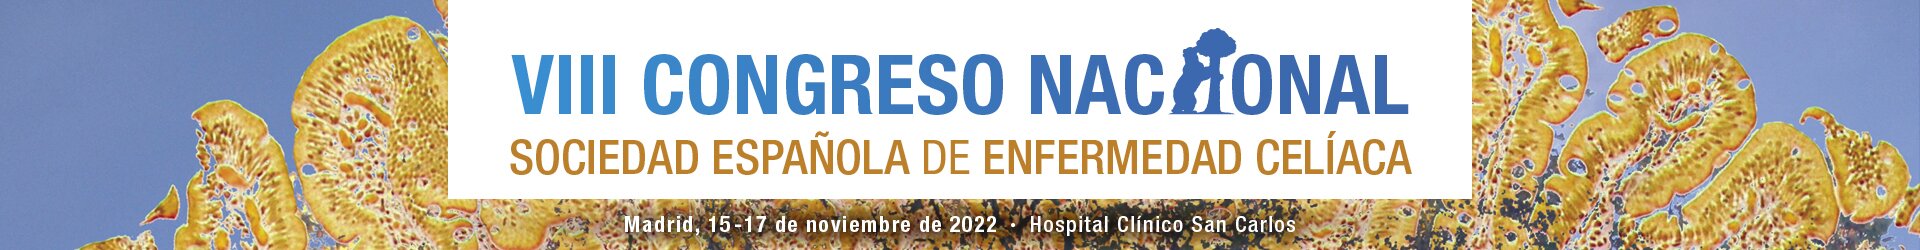 VIII Congreso Nacional Sociedad Española de Enfermedad Celíaca